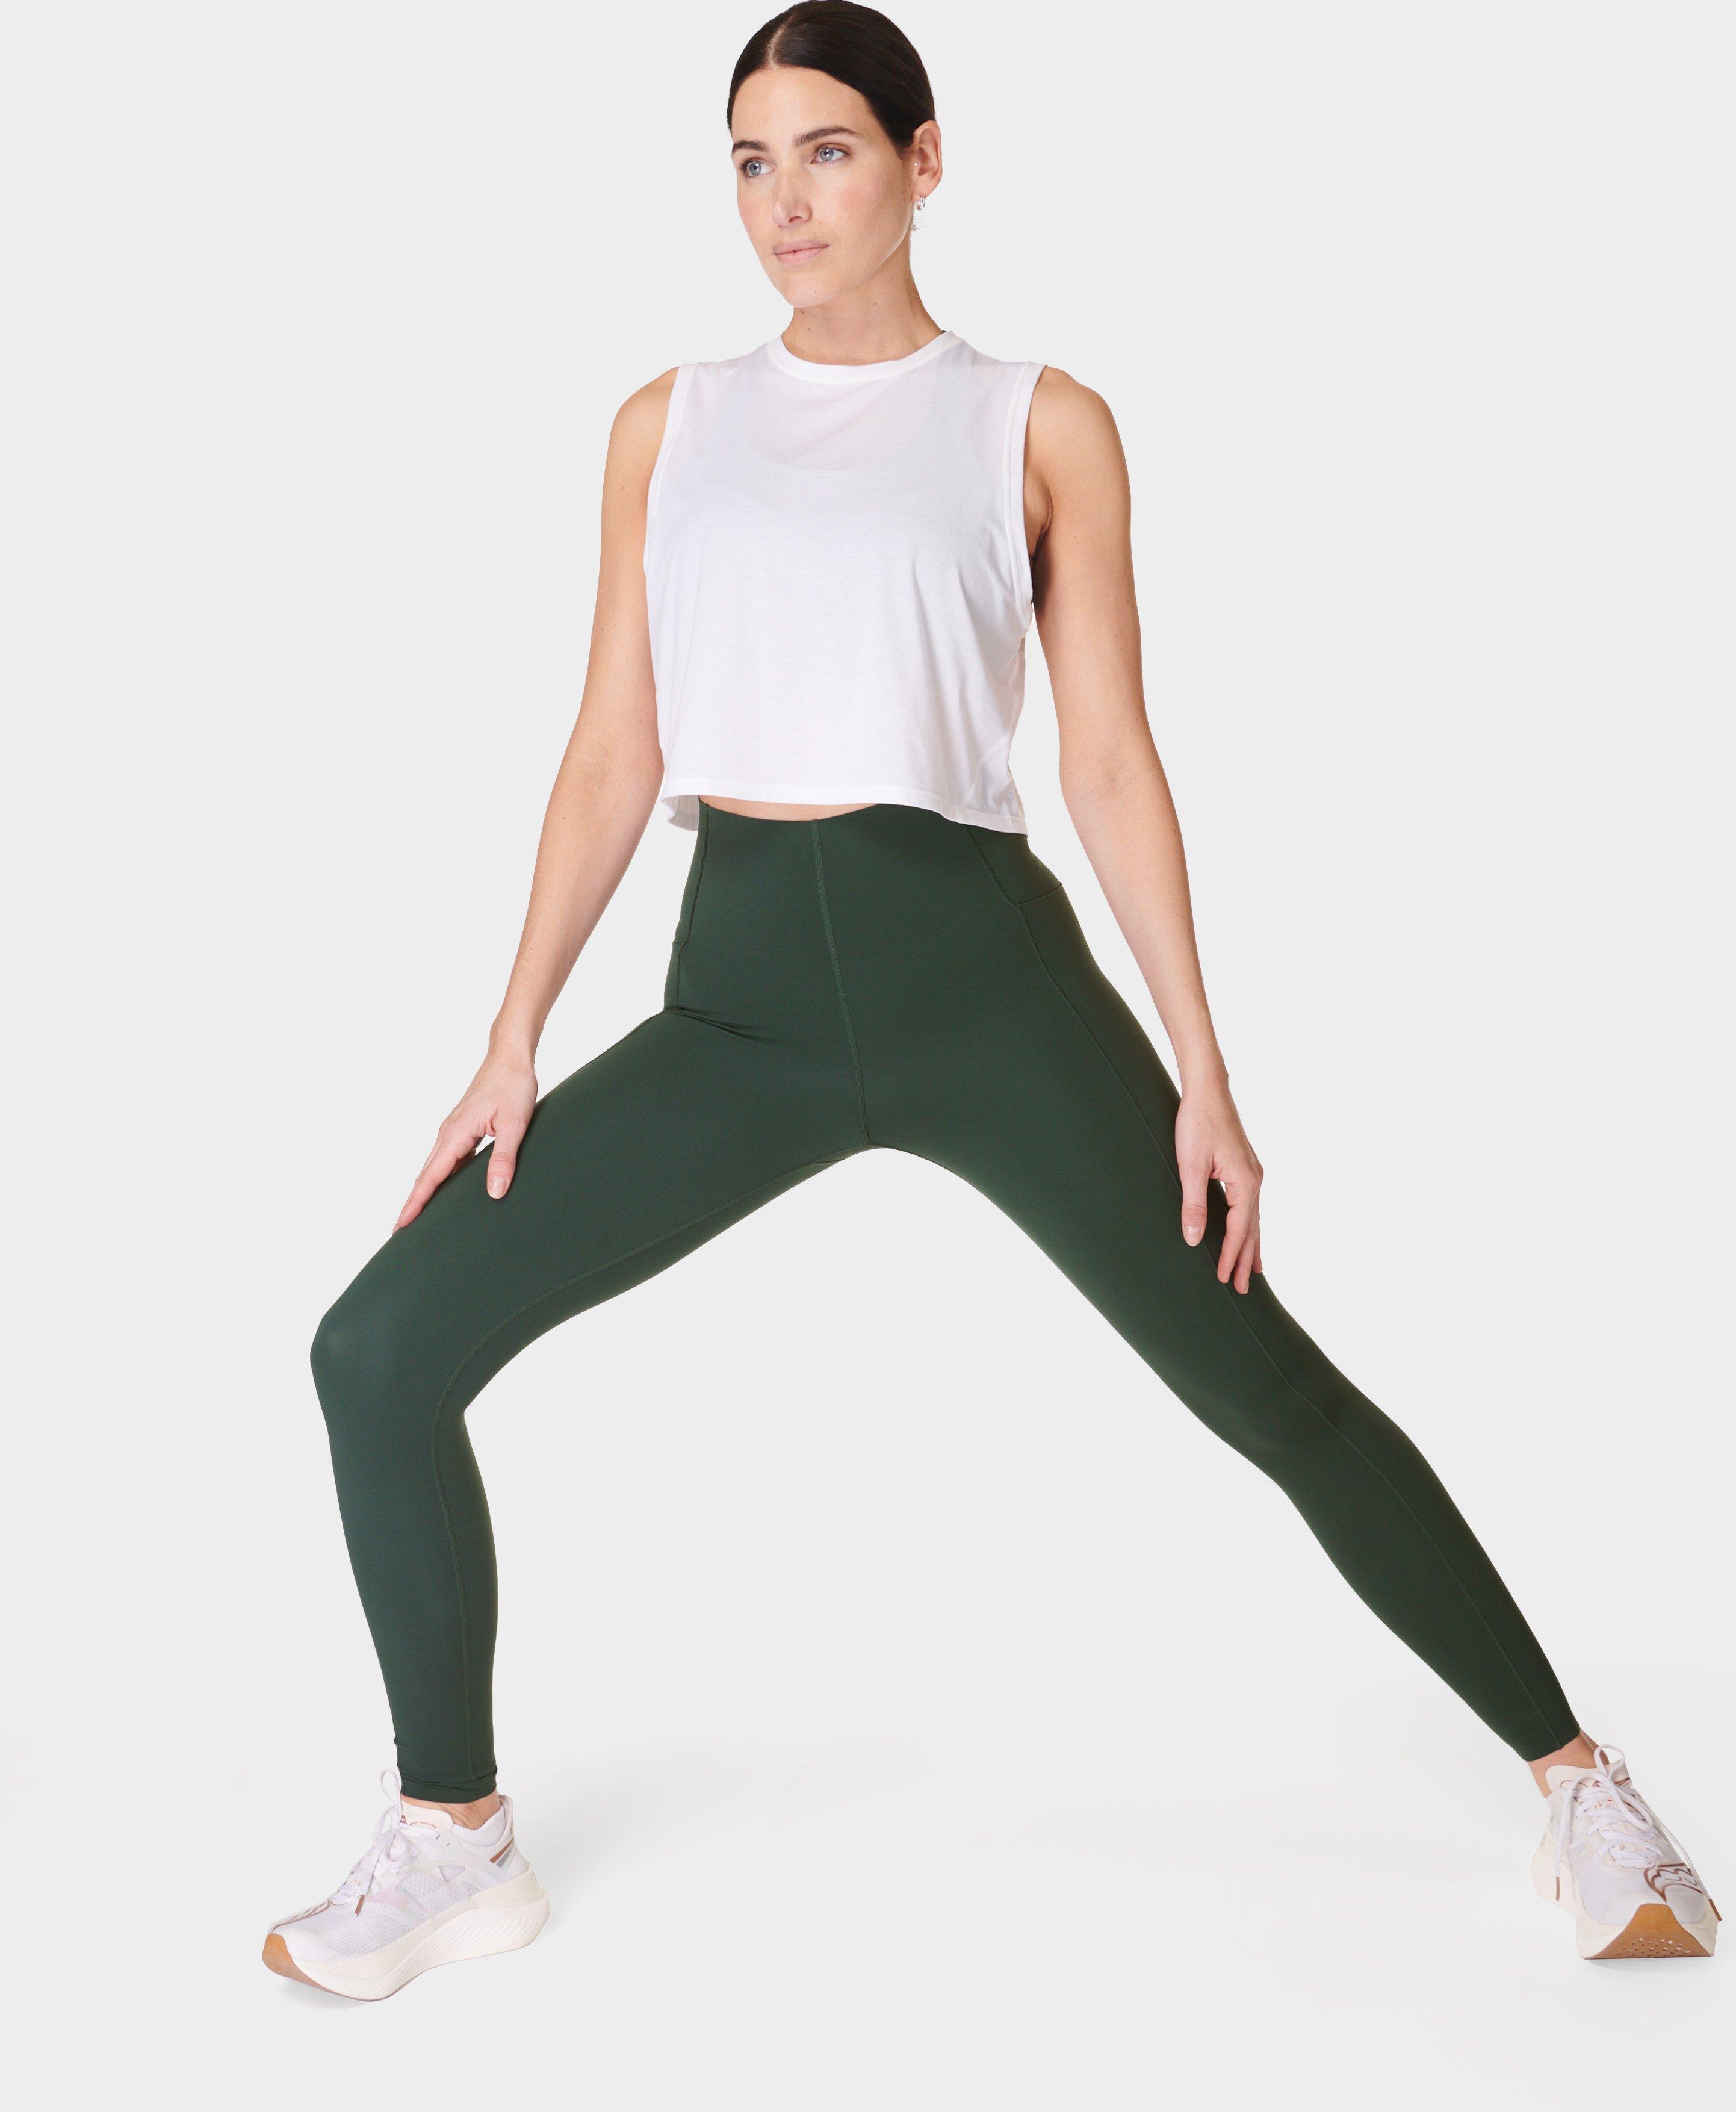 Power UltraSculpt High-Waisted Workout Leggings - Trek Green